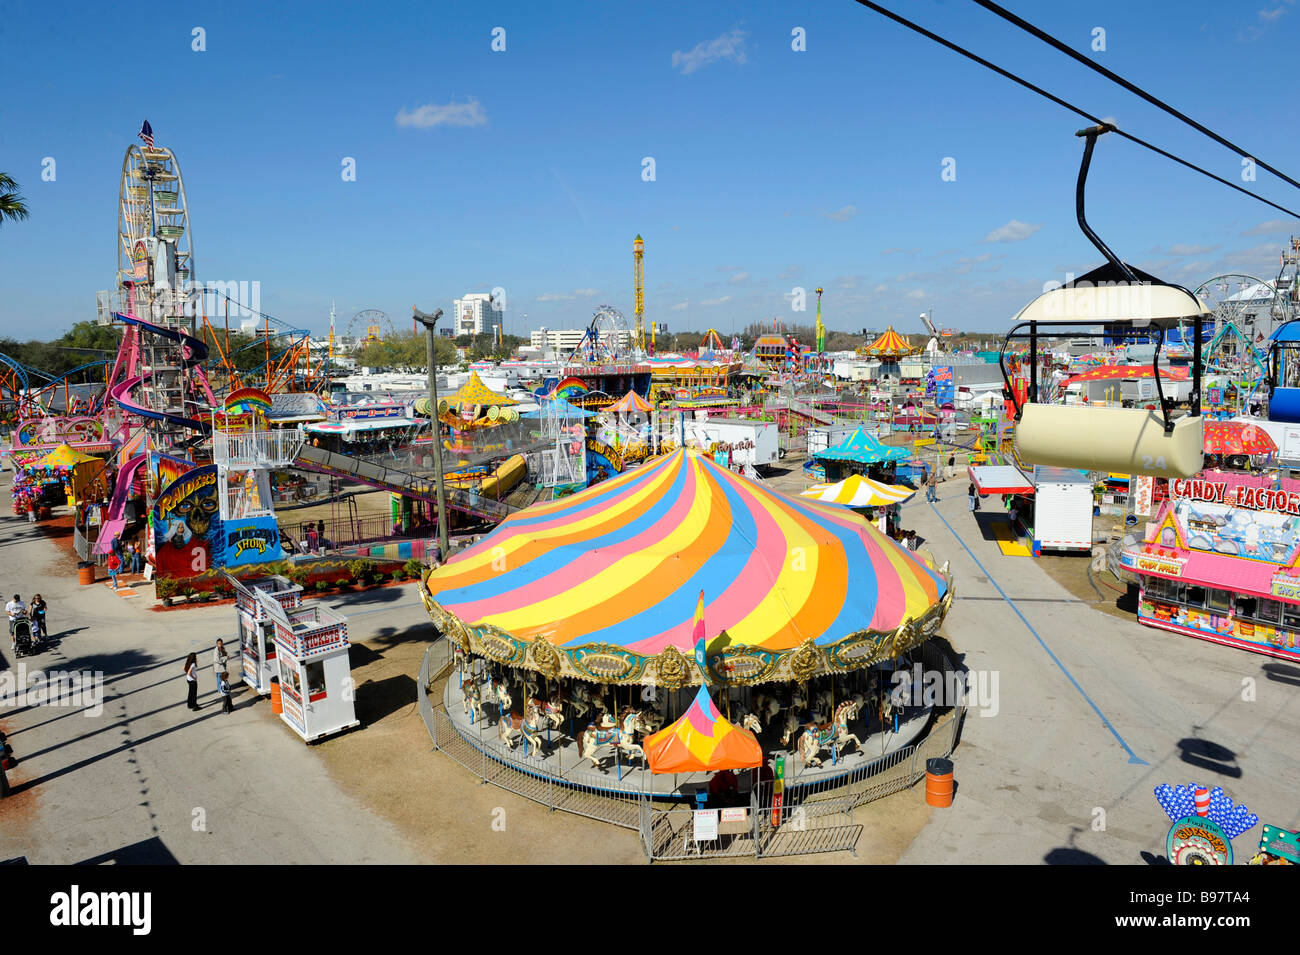 Midway at Florida State Fairgrounds Tampa fair Stock Photo